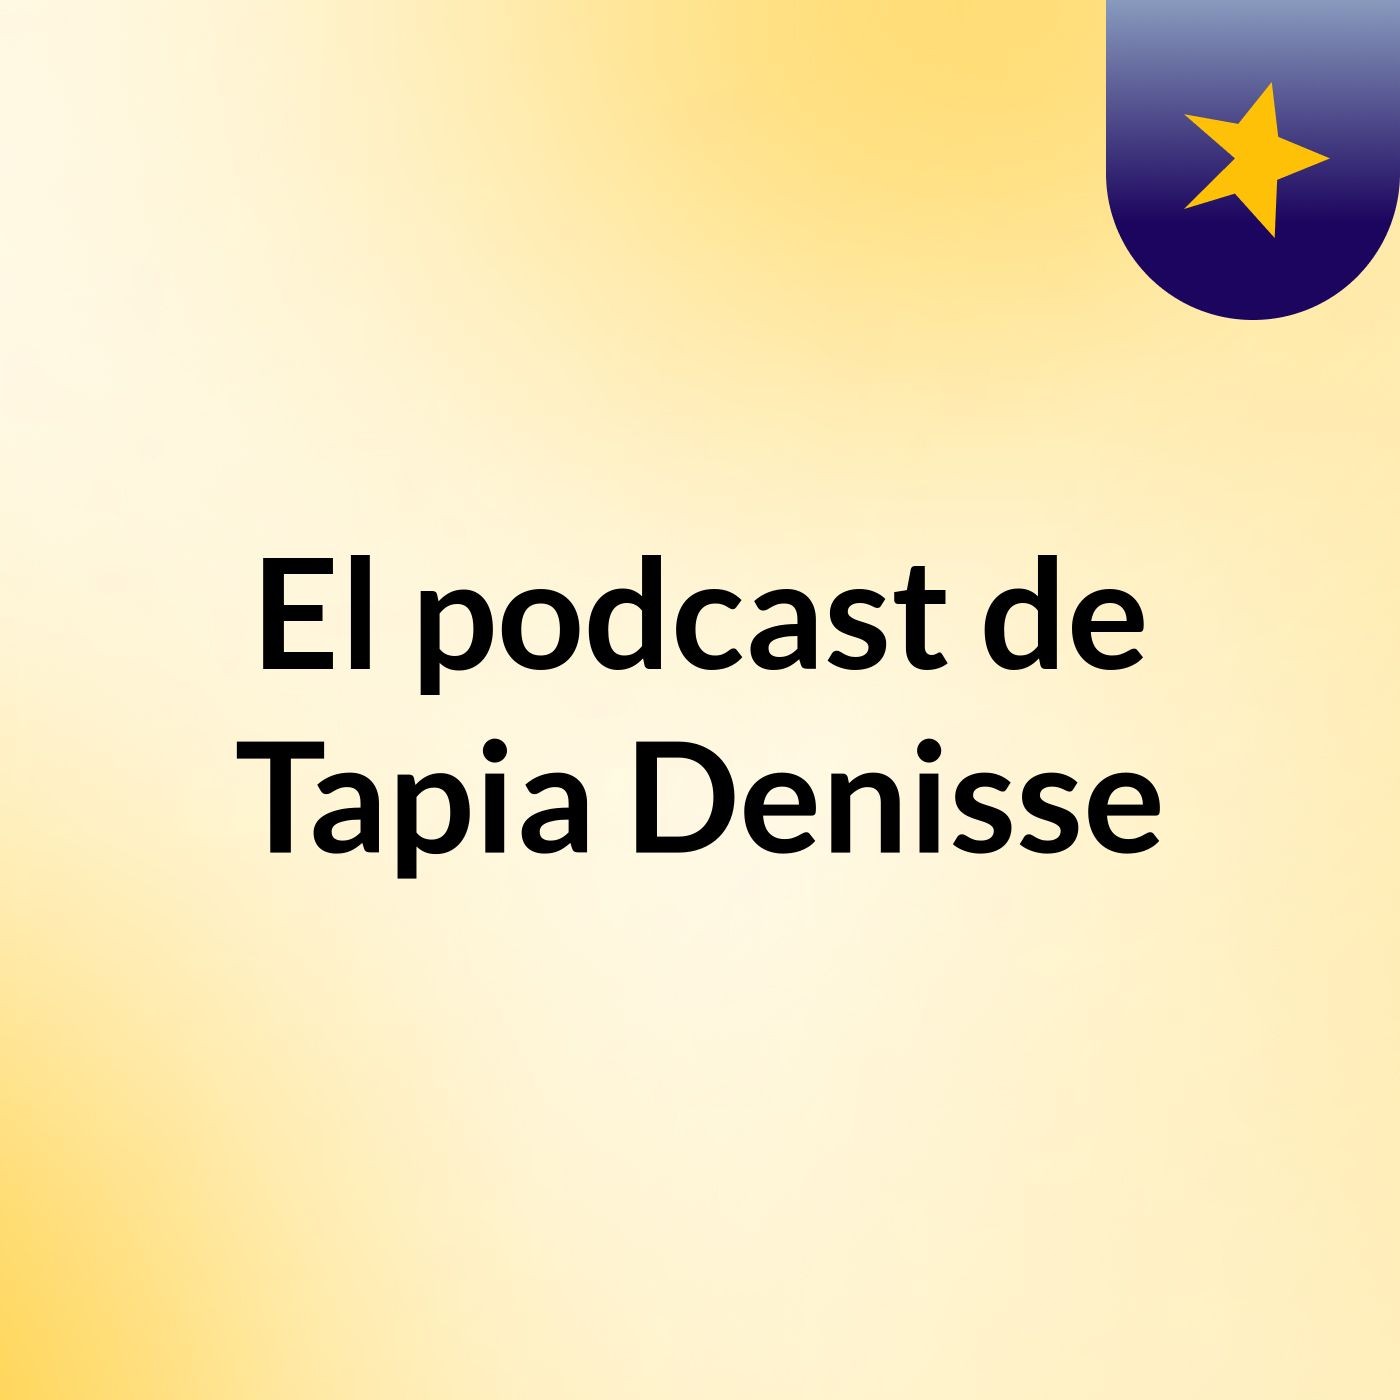 El podcast de Tapia Denisse